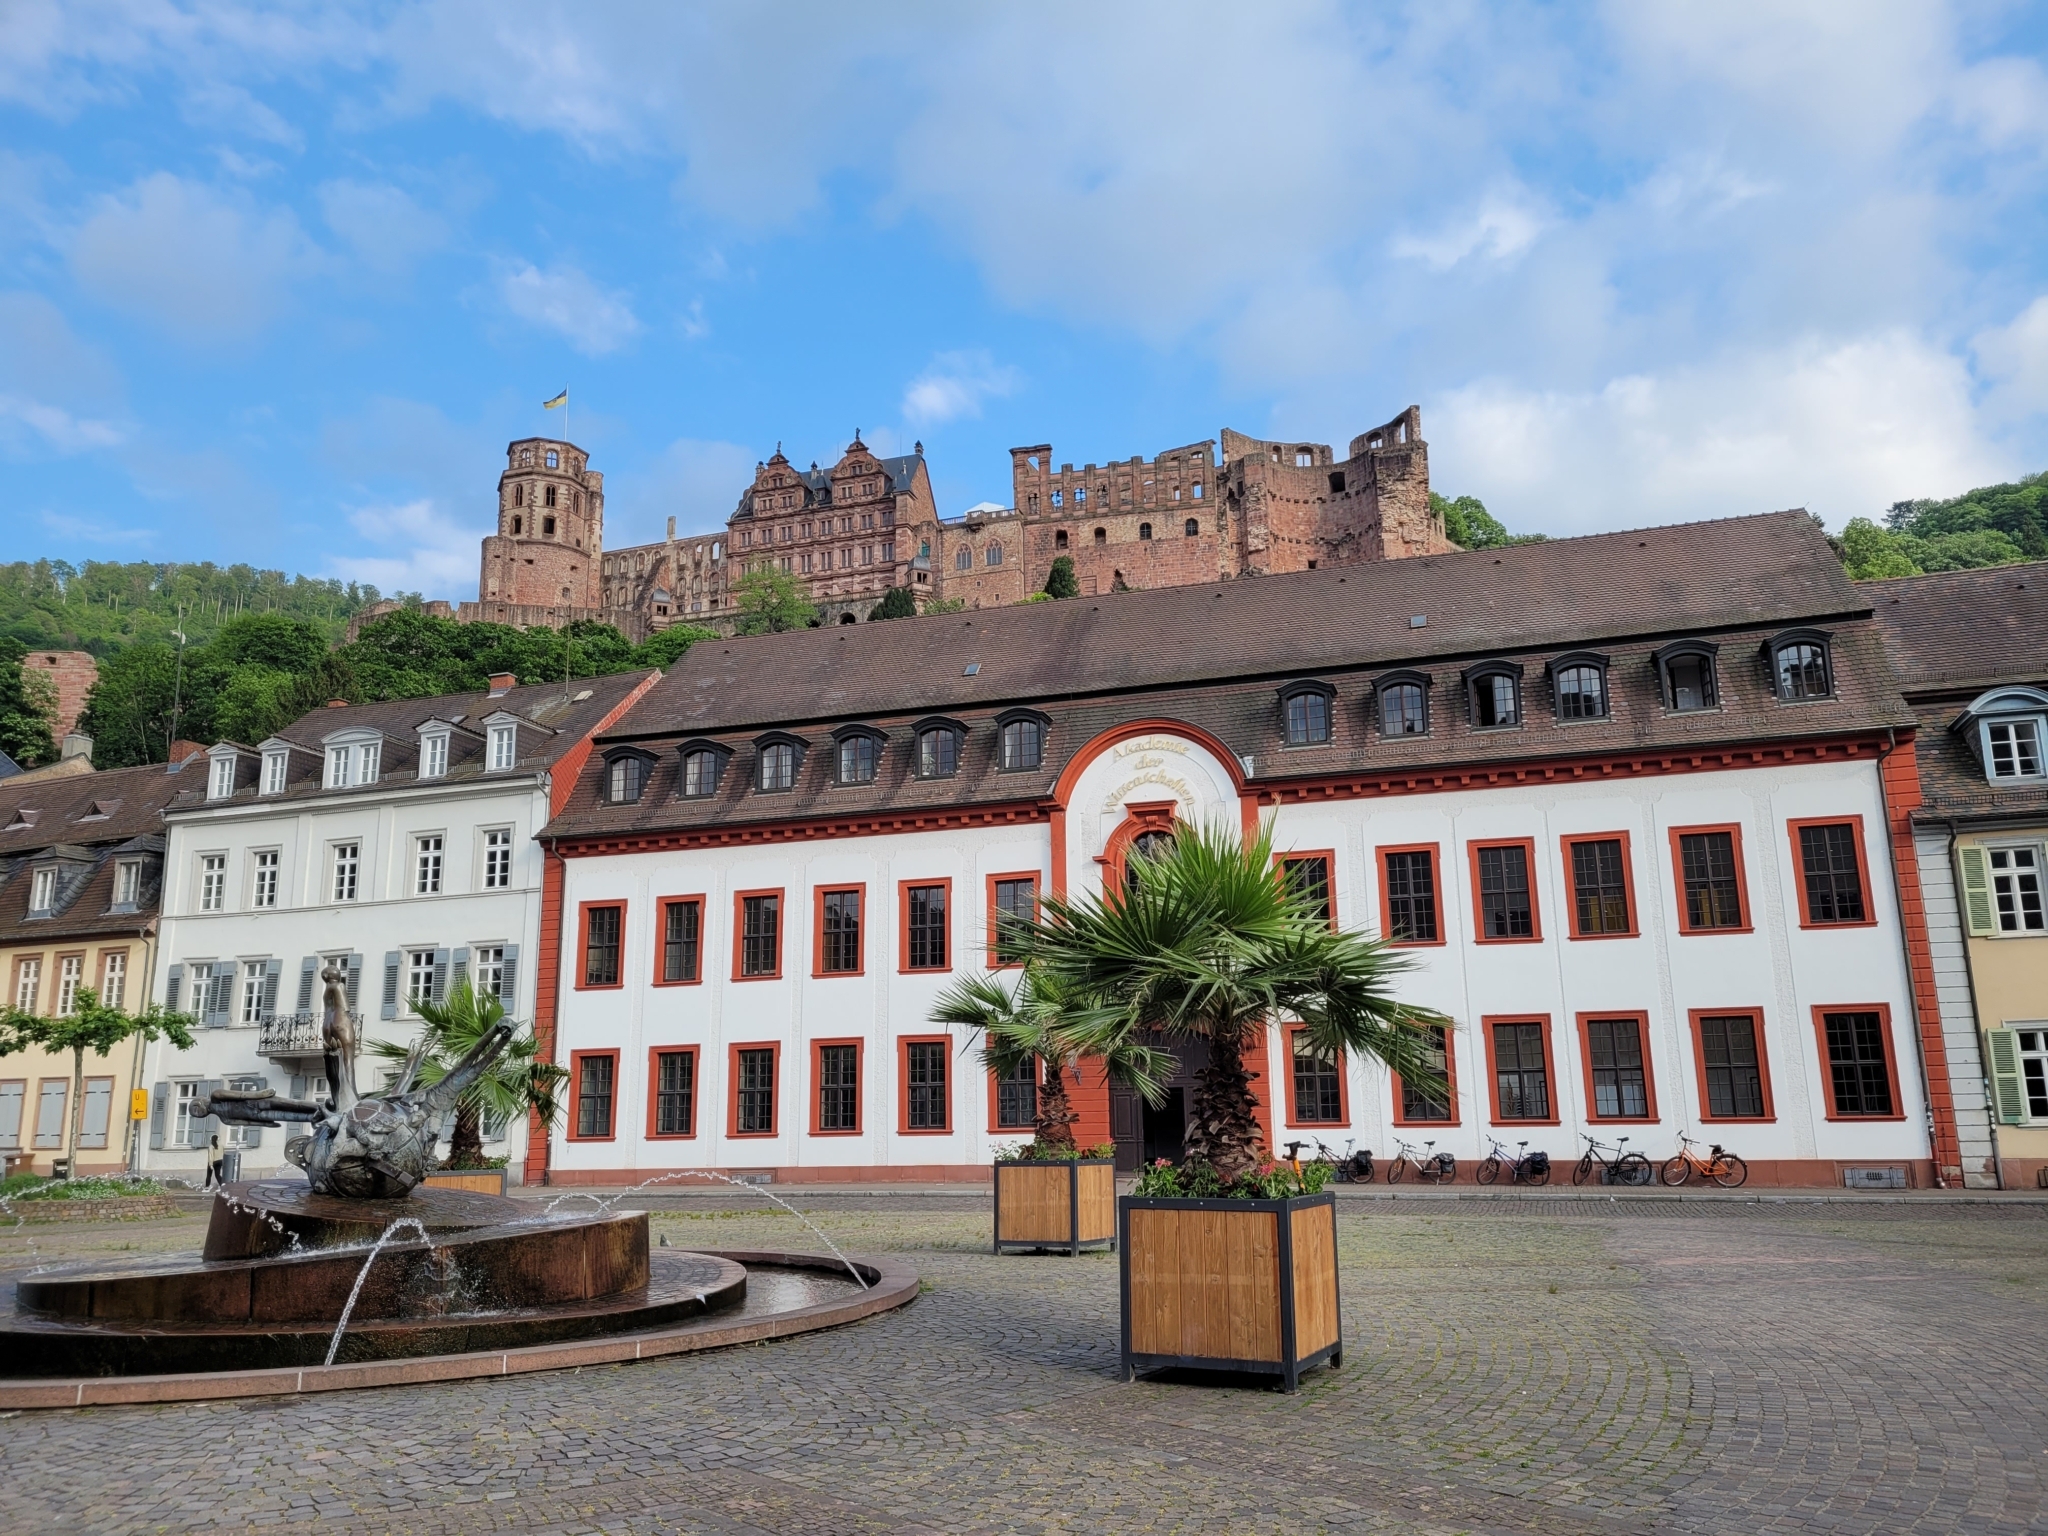 Aufnahme des Stadtplatzes mit der Burg im Hintergrund  (vergrößerte Ansicht in der Galerie)